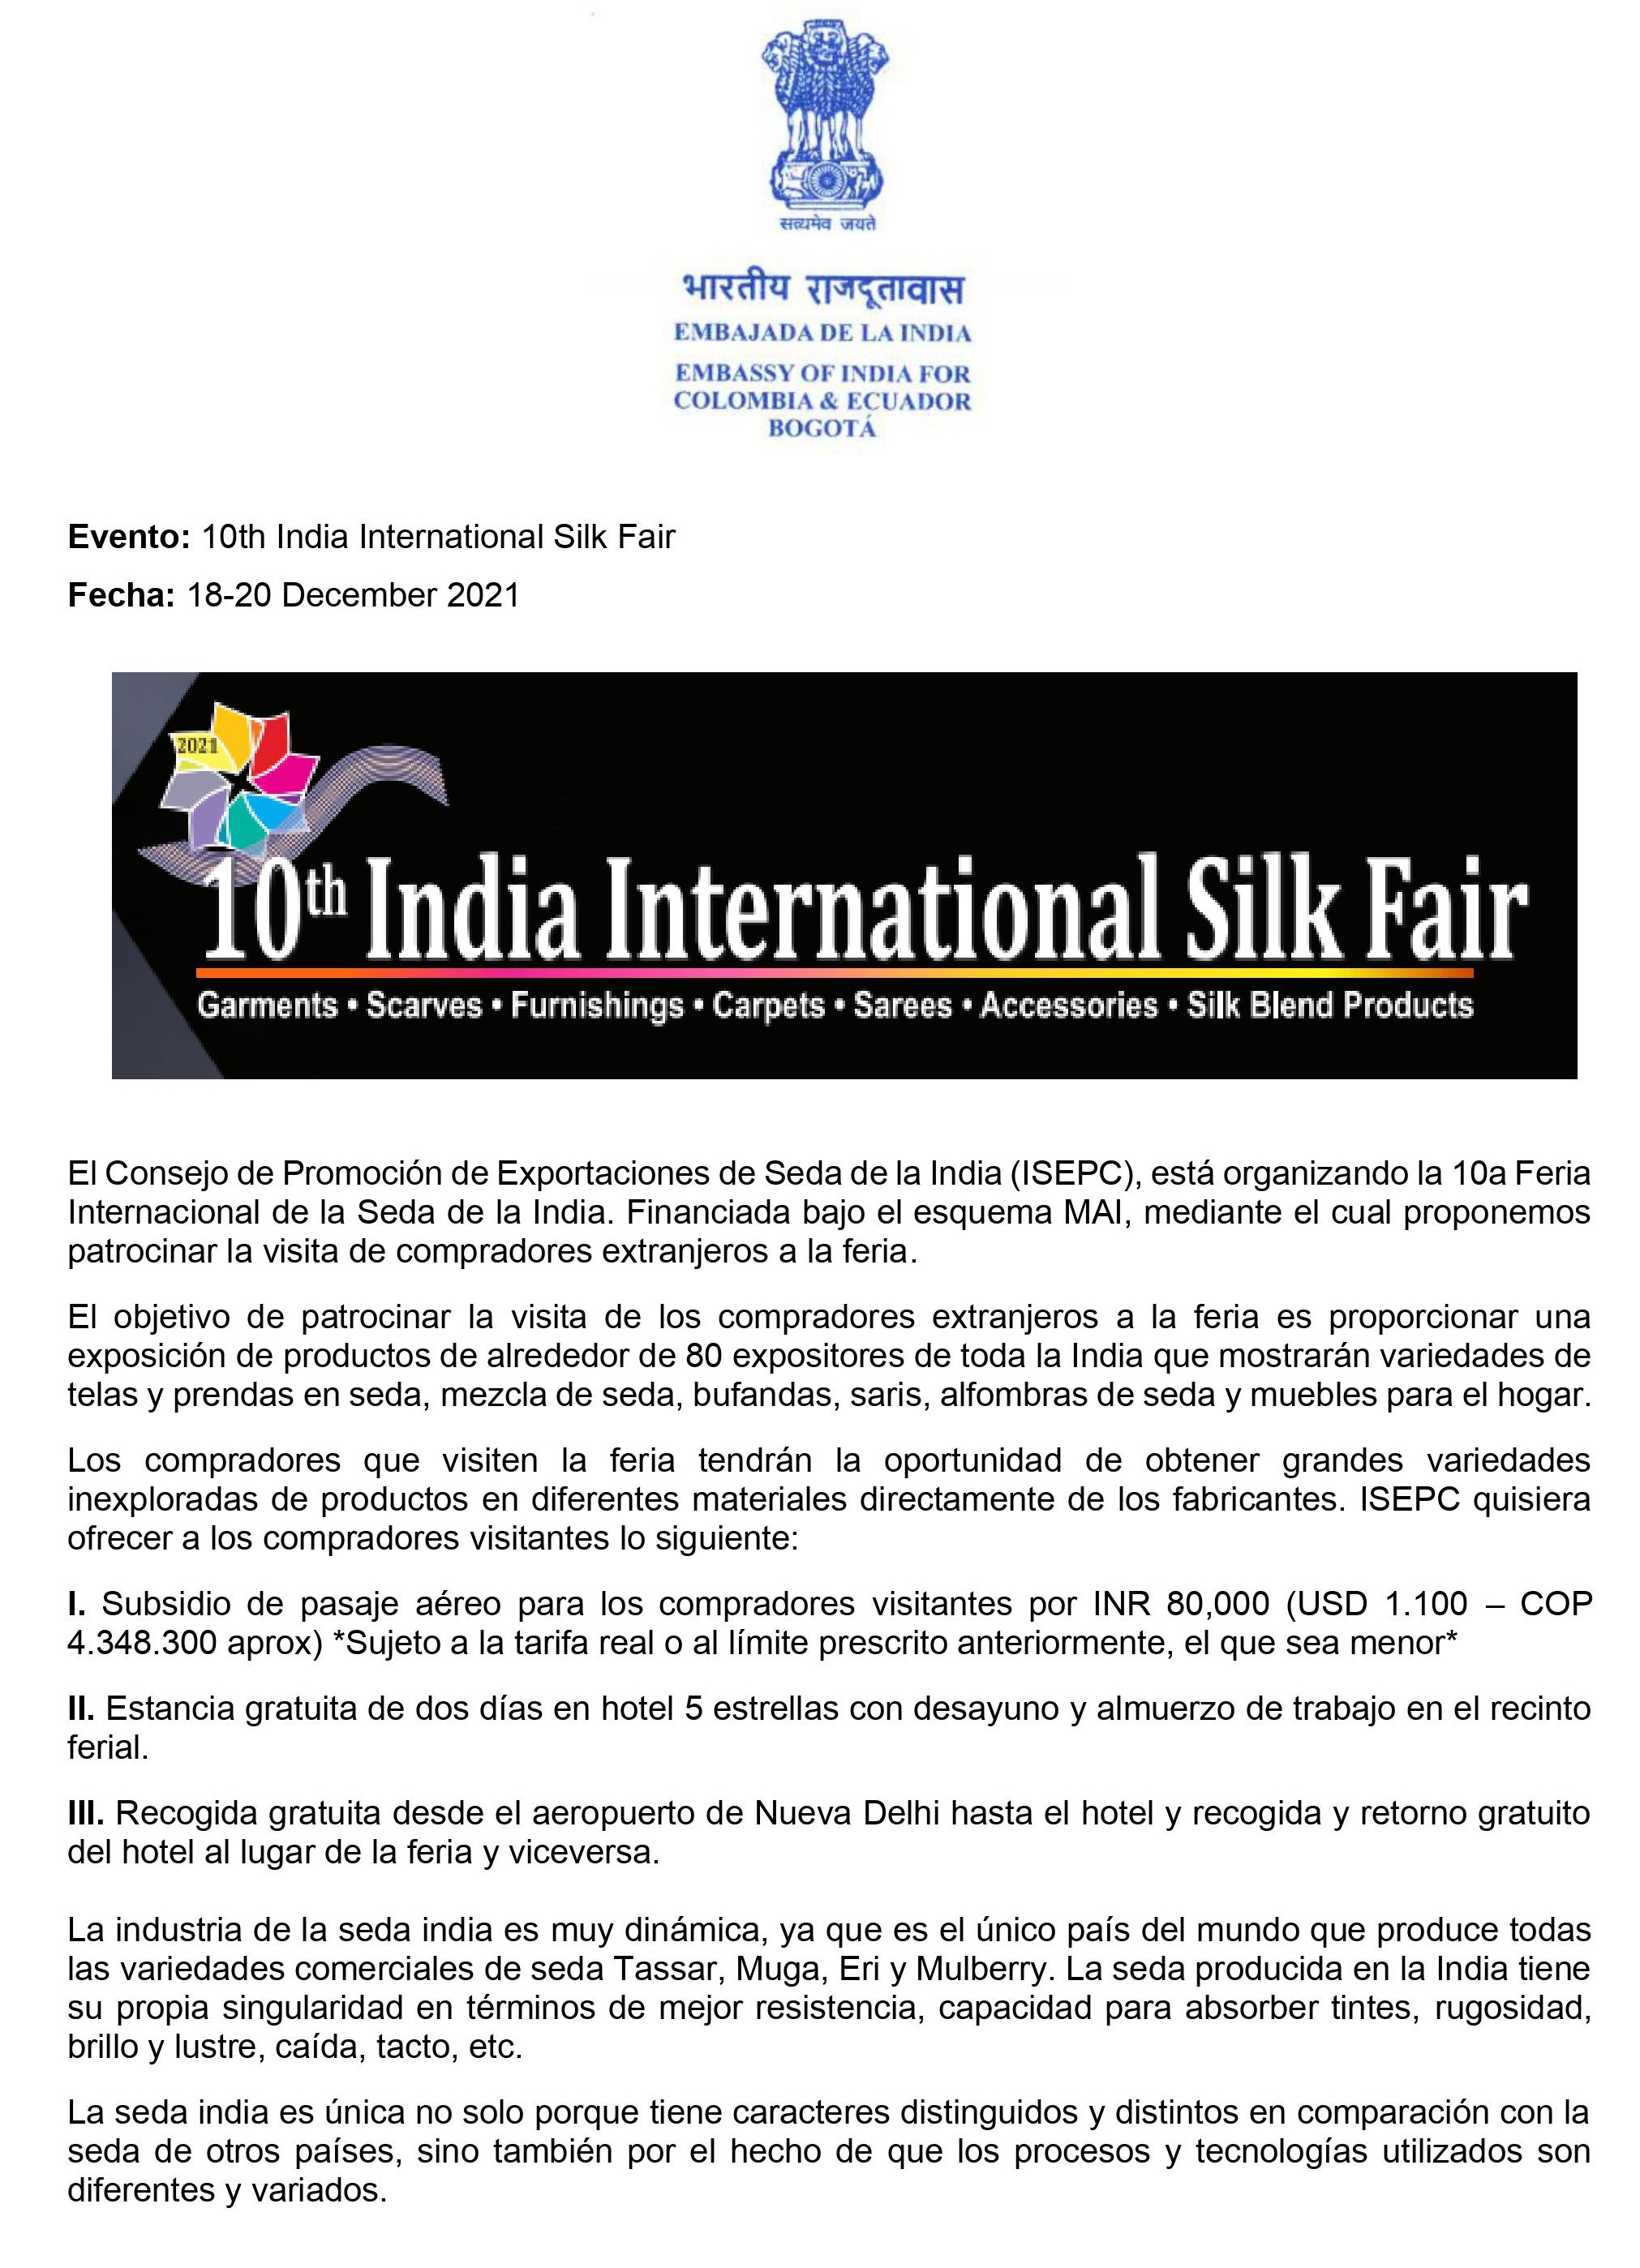 10th Int Silk Fair